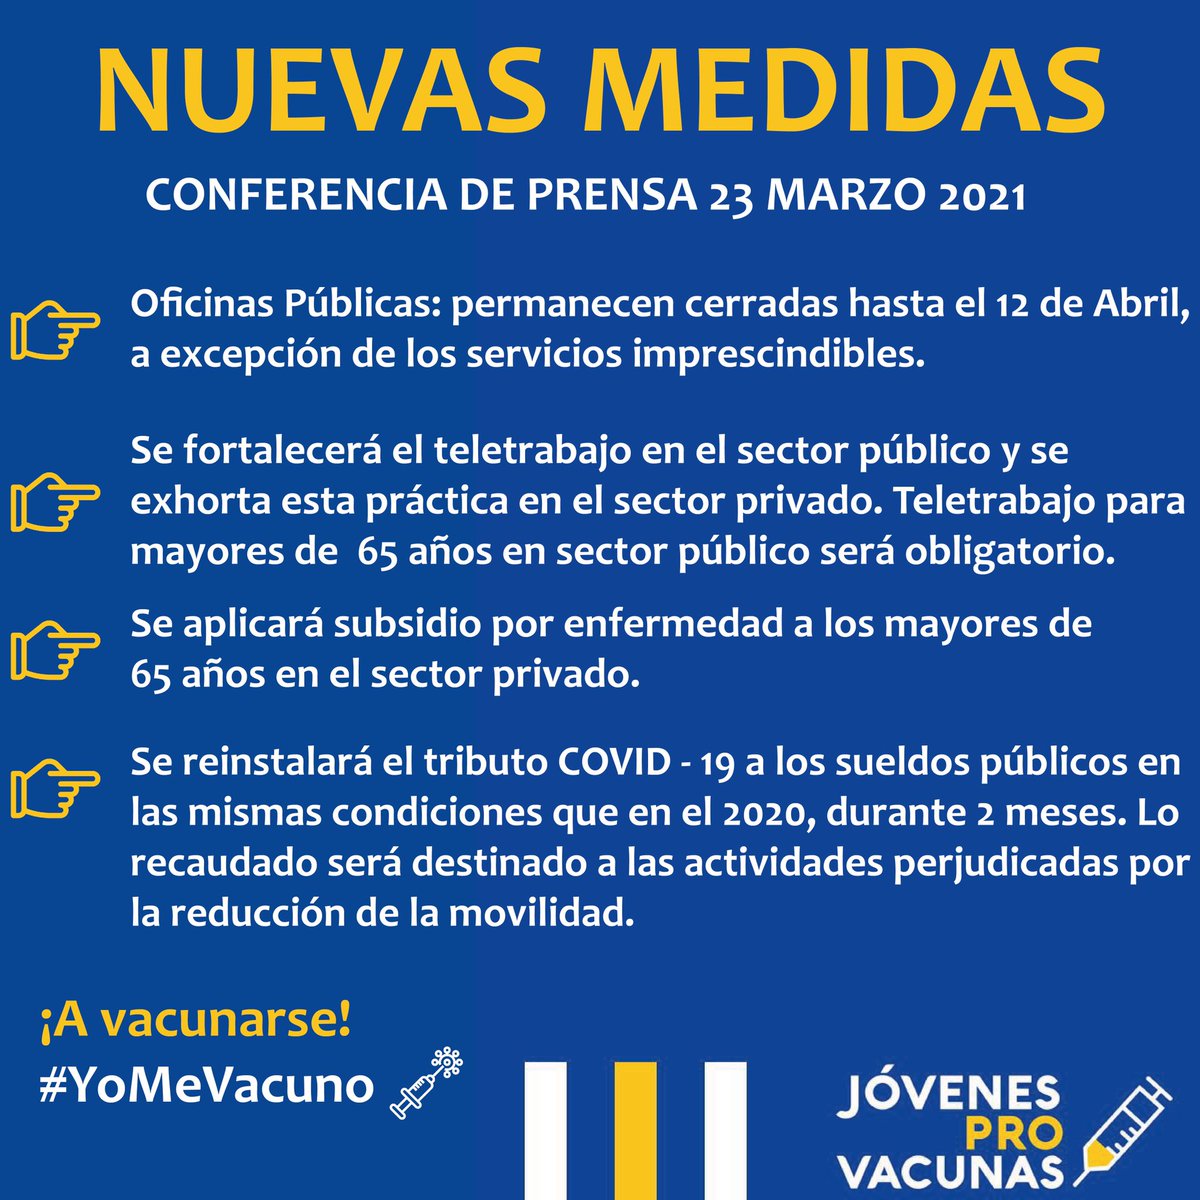 Nuevas medidas brindadas en la conferencia de prensa el 23 de marzo💡

#YoMeVacuno #QuedateEnTuBurbuja